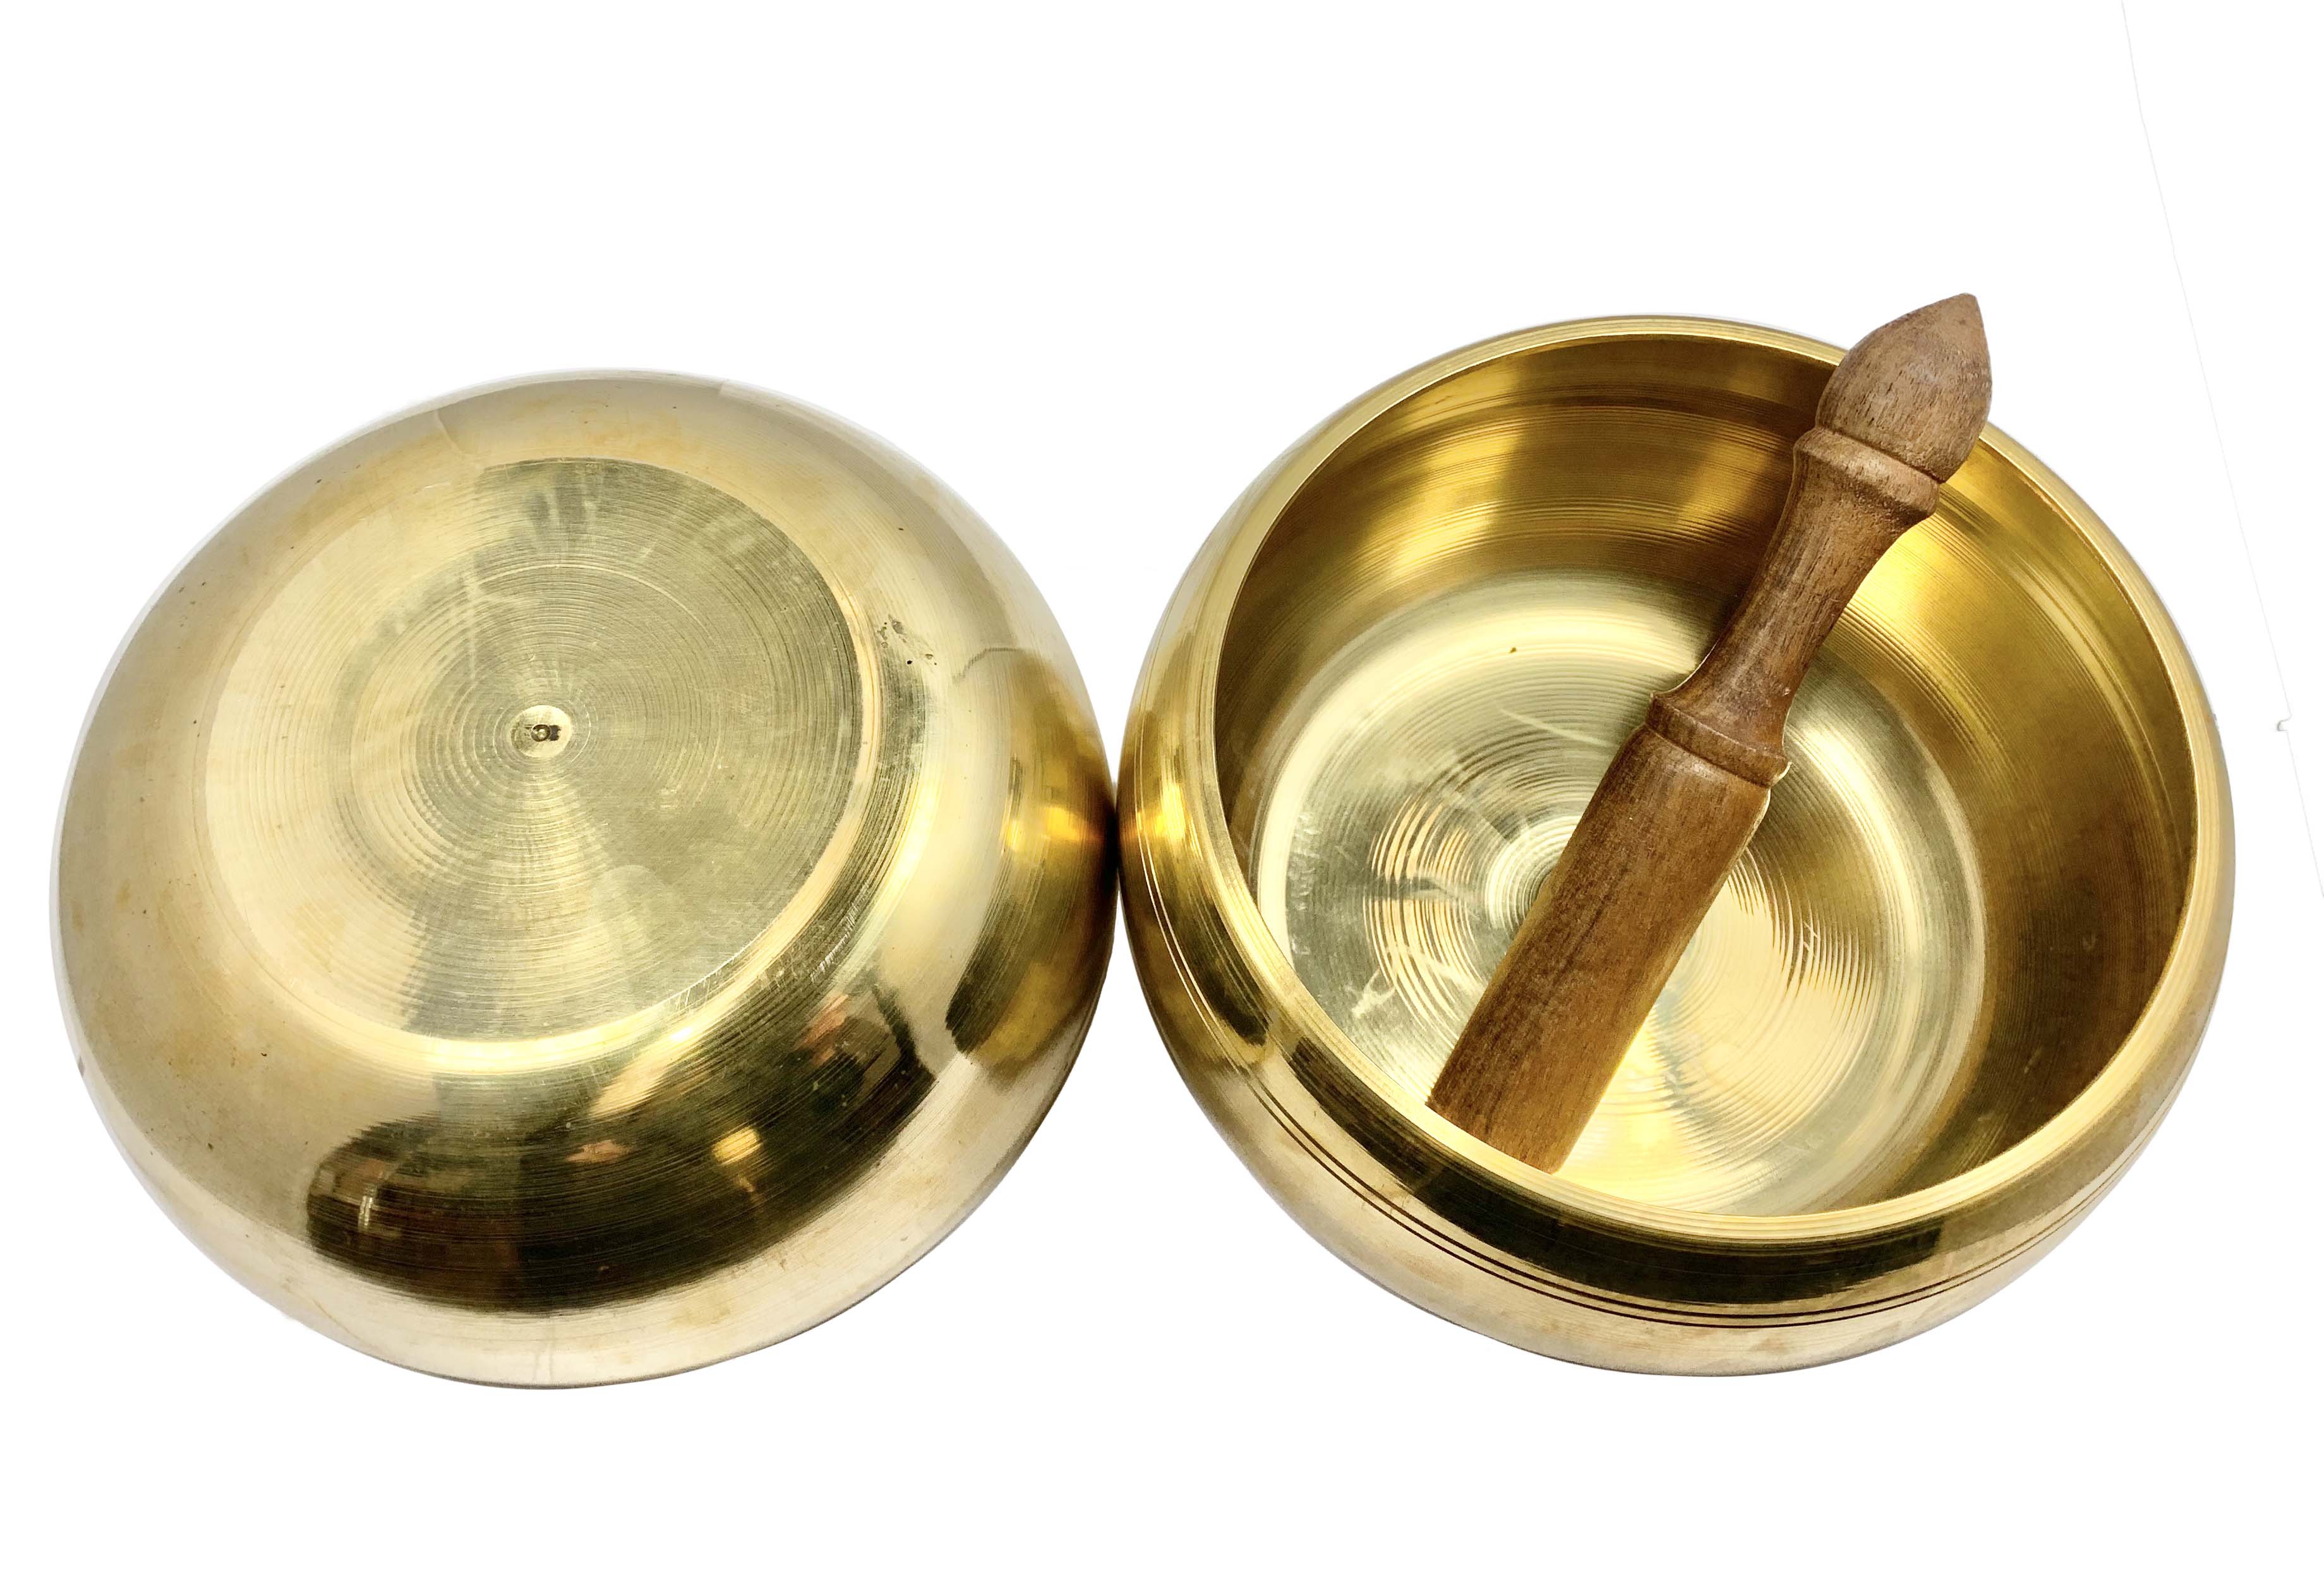 Tibetan Singing Bowl Hand Beaten Polished Brass 13.5cm